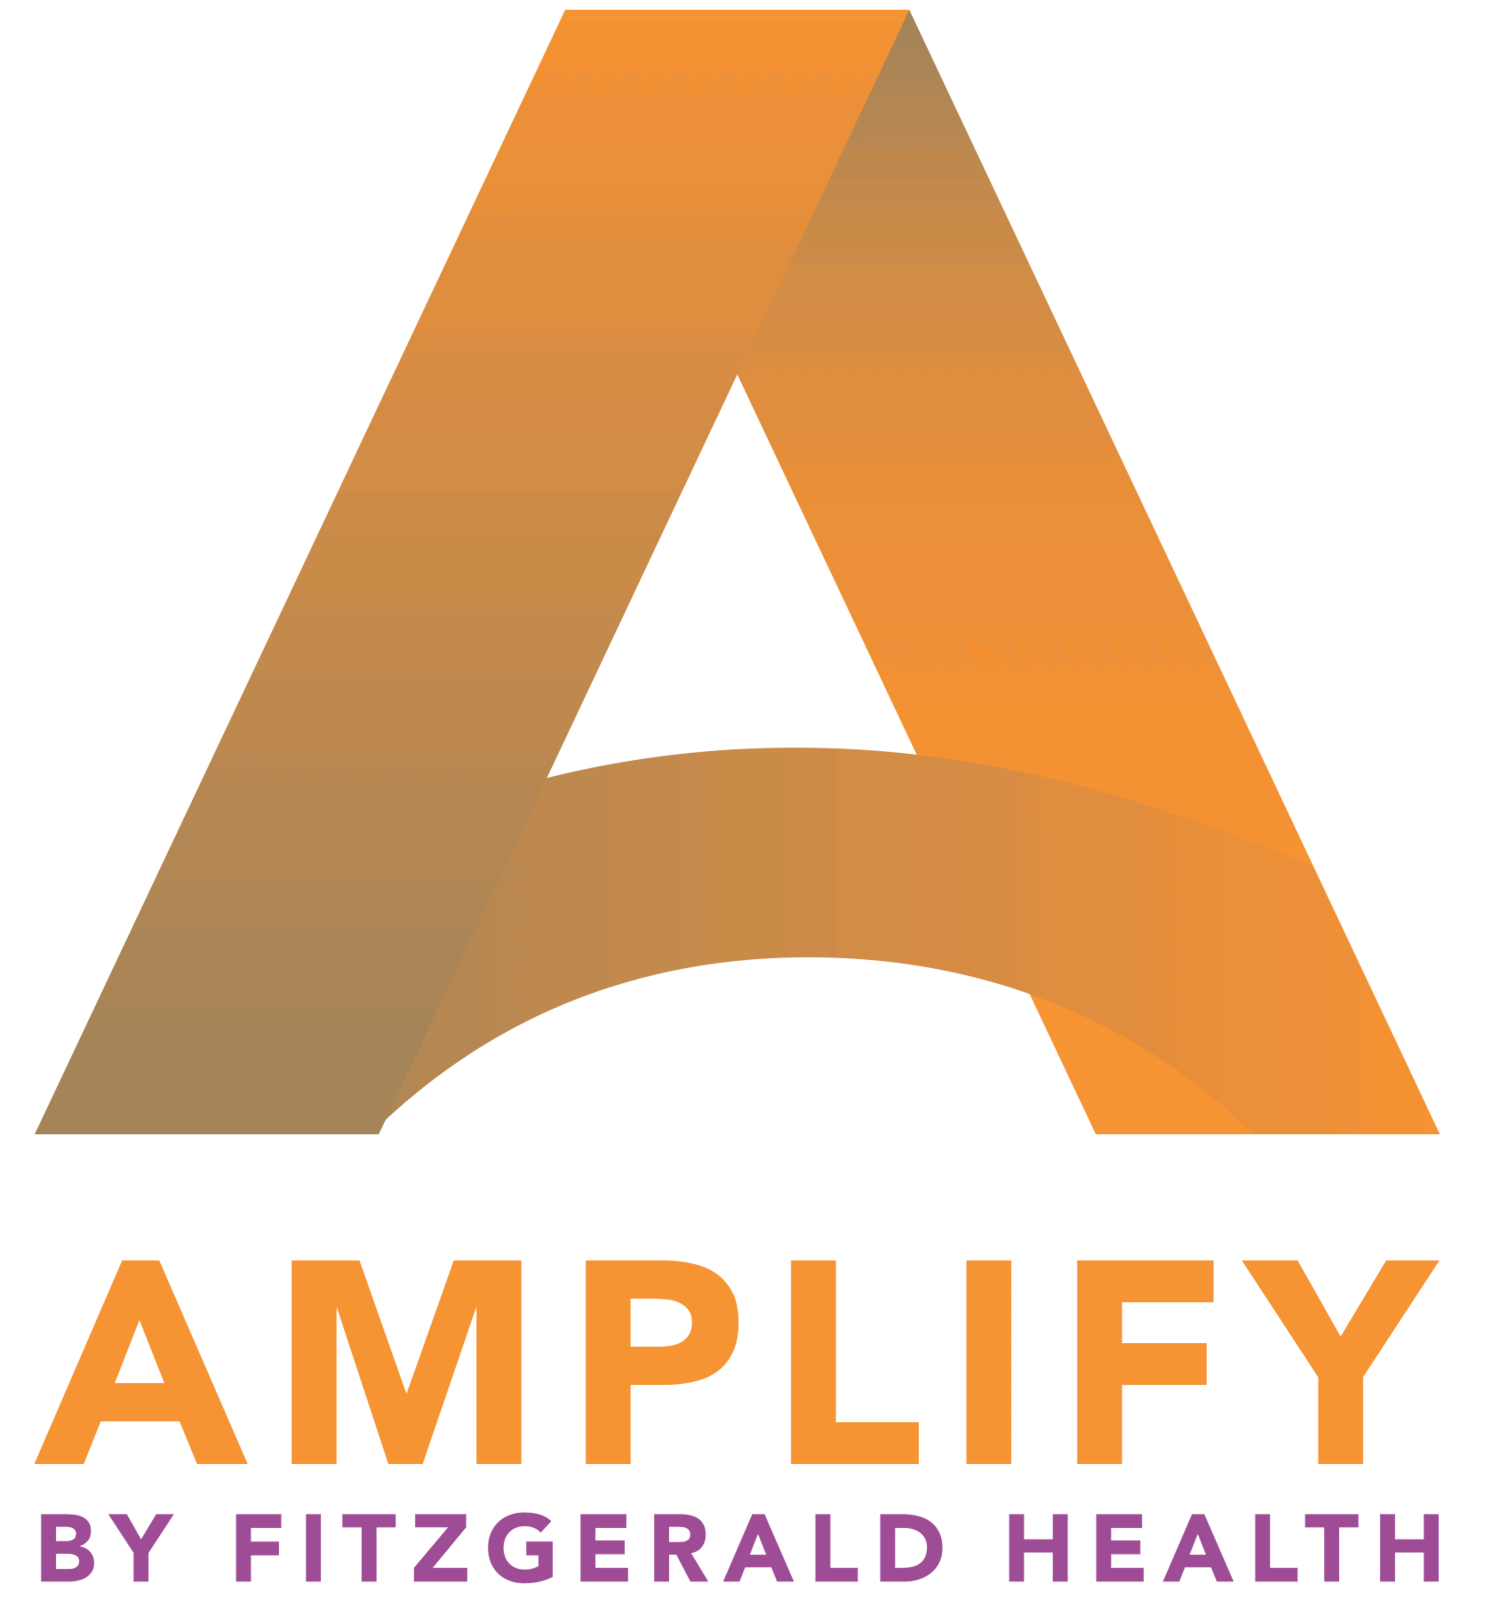 Amplify Science – Amplify